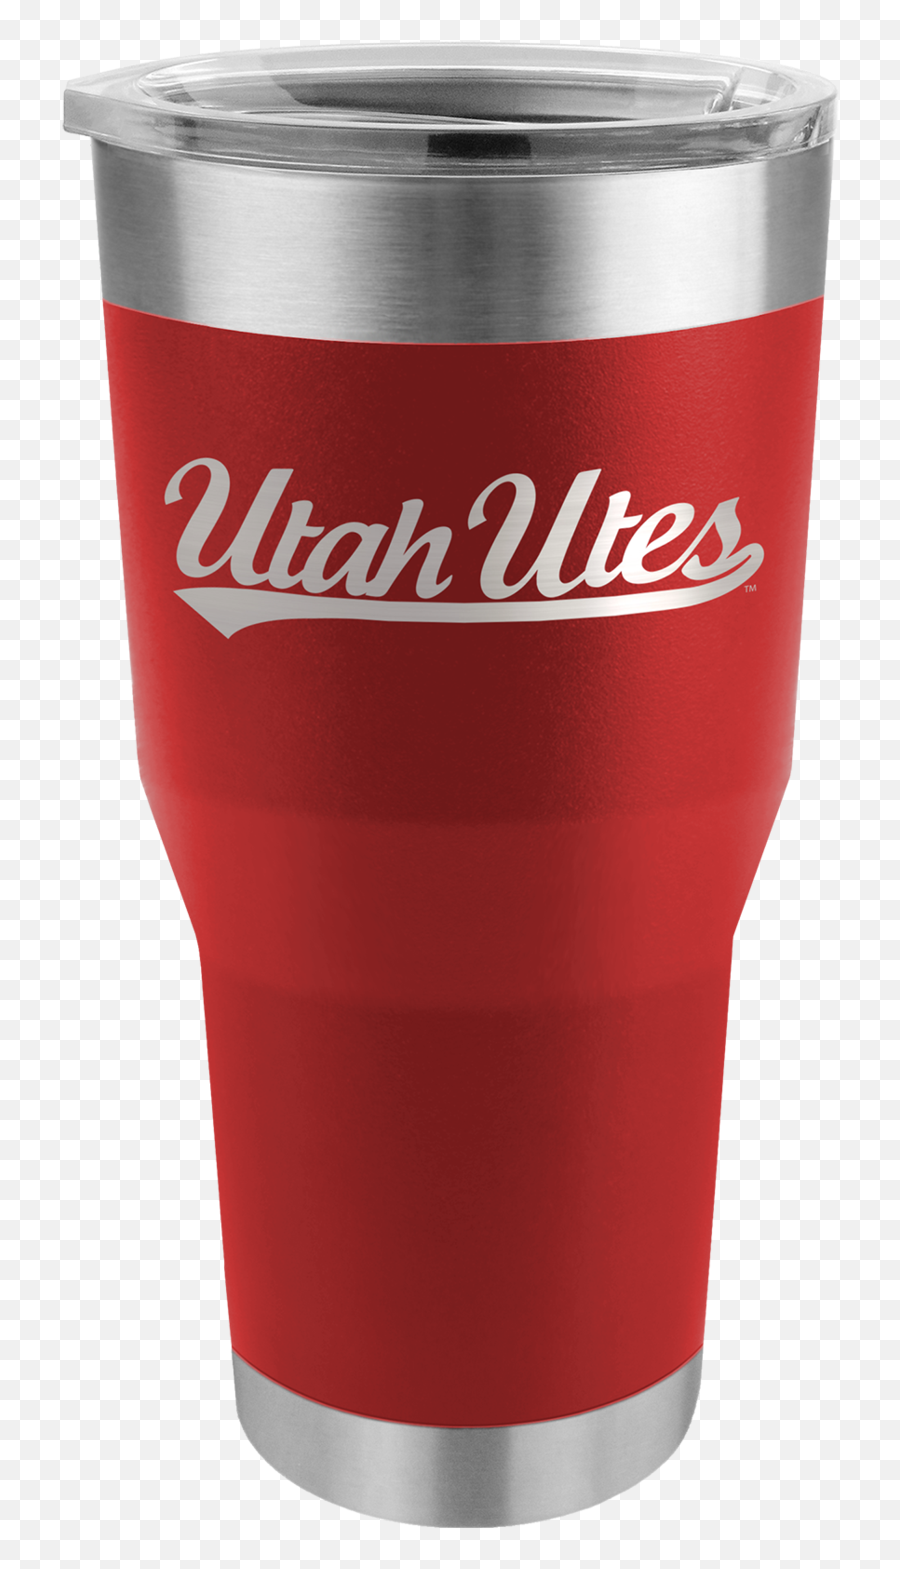 28oz Tumbler - Utah Emoji,Utah Utes Logo